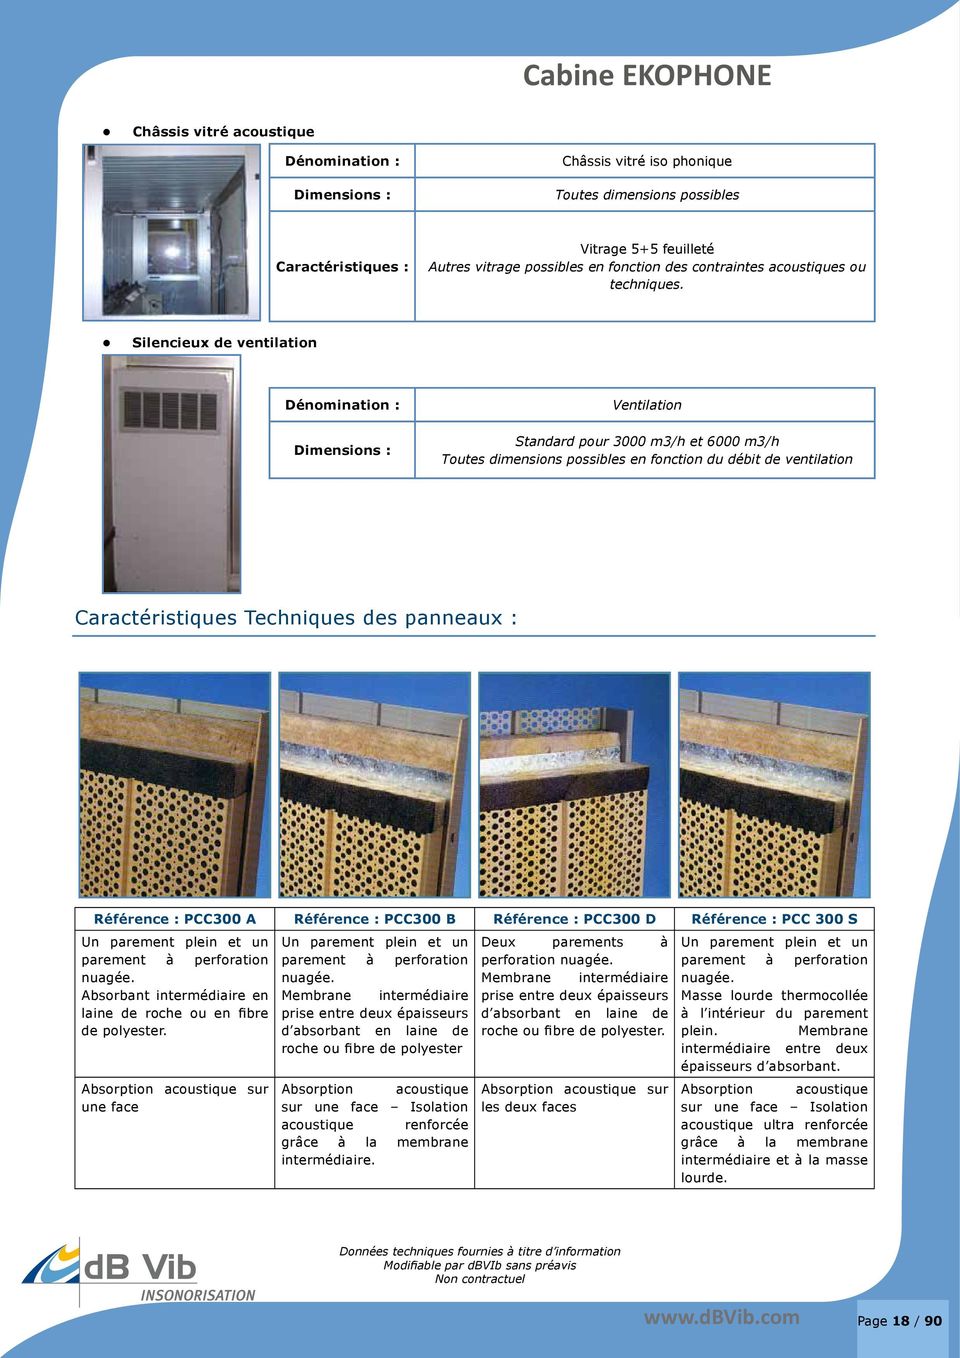 Silencieux de ventilation Dénomination : Dimensions : Ventilation Standard pour 3000 m3/h et 6000 m3/h Toutes dimensions possibles en fonction du débit de ventilation Caractéristiques Techniques des